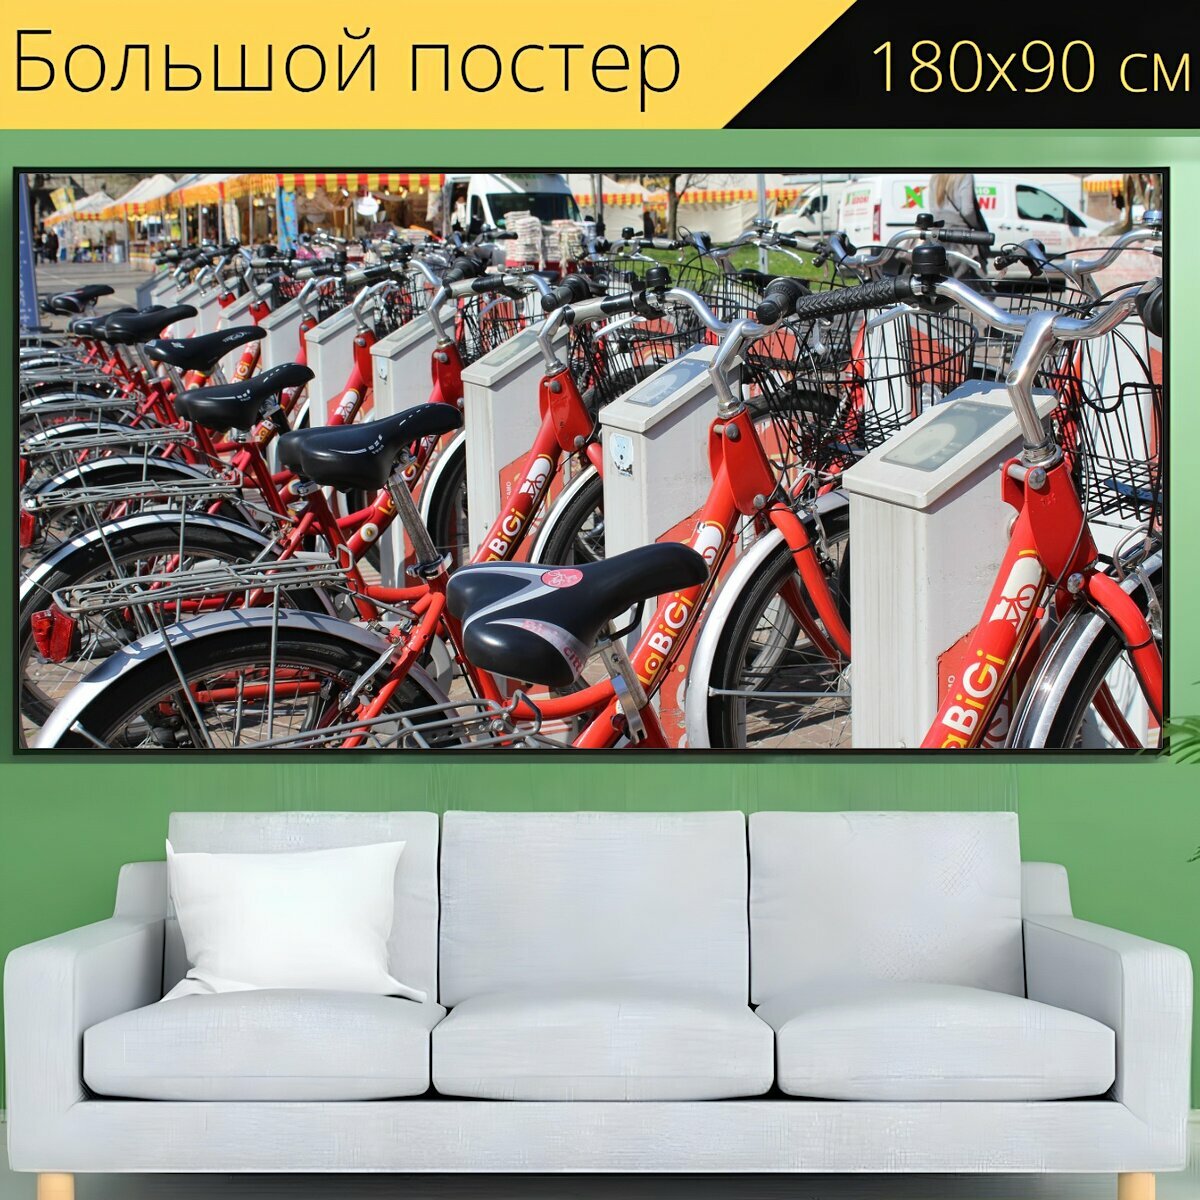 Большой постер "Велосипеды, прокат велосипедов, транспорт" 180 x 90 см. для интерьера